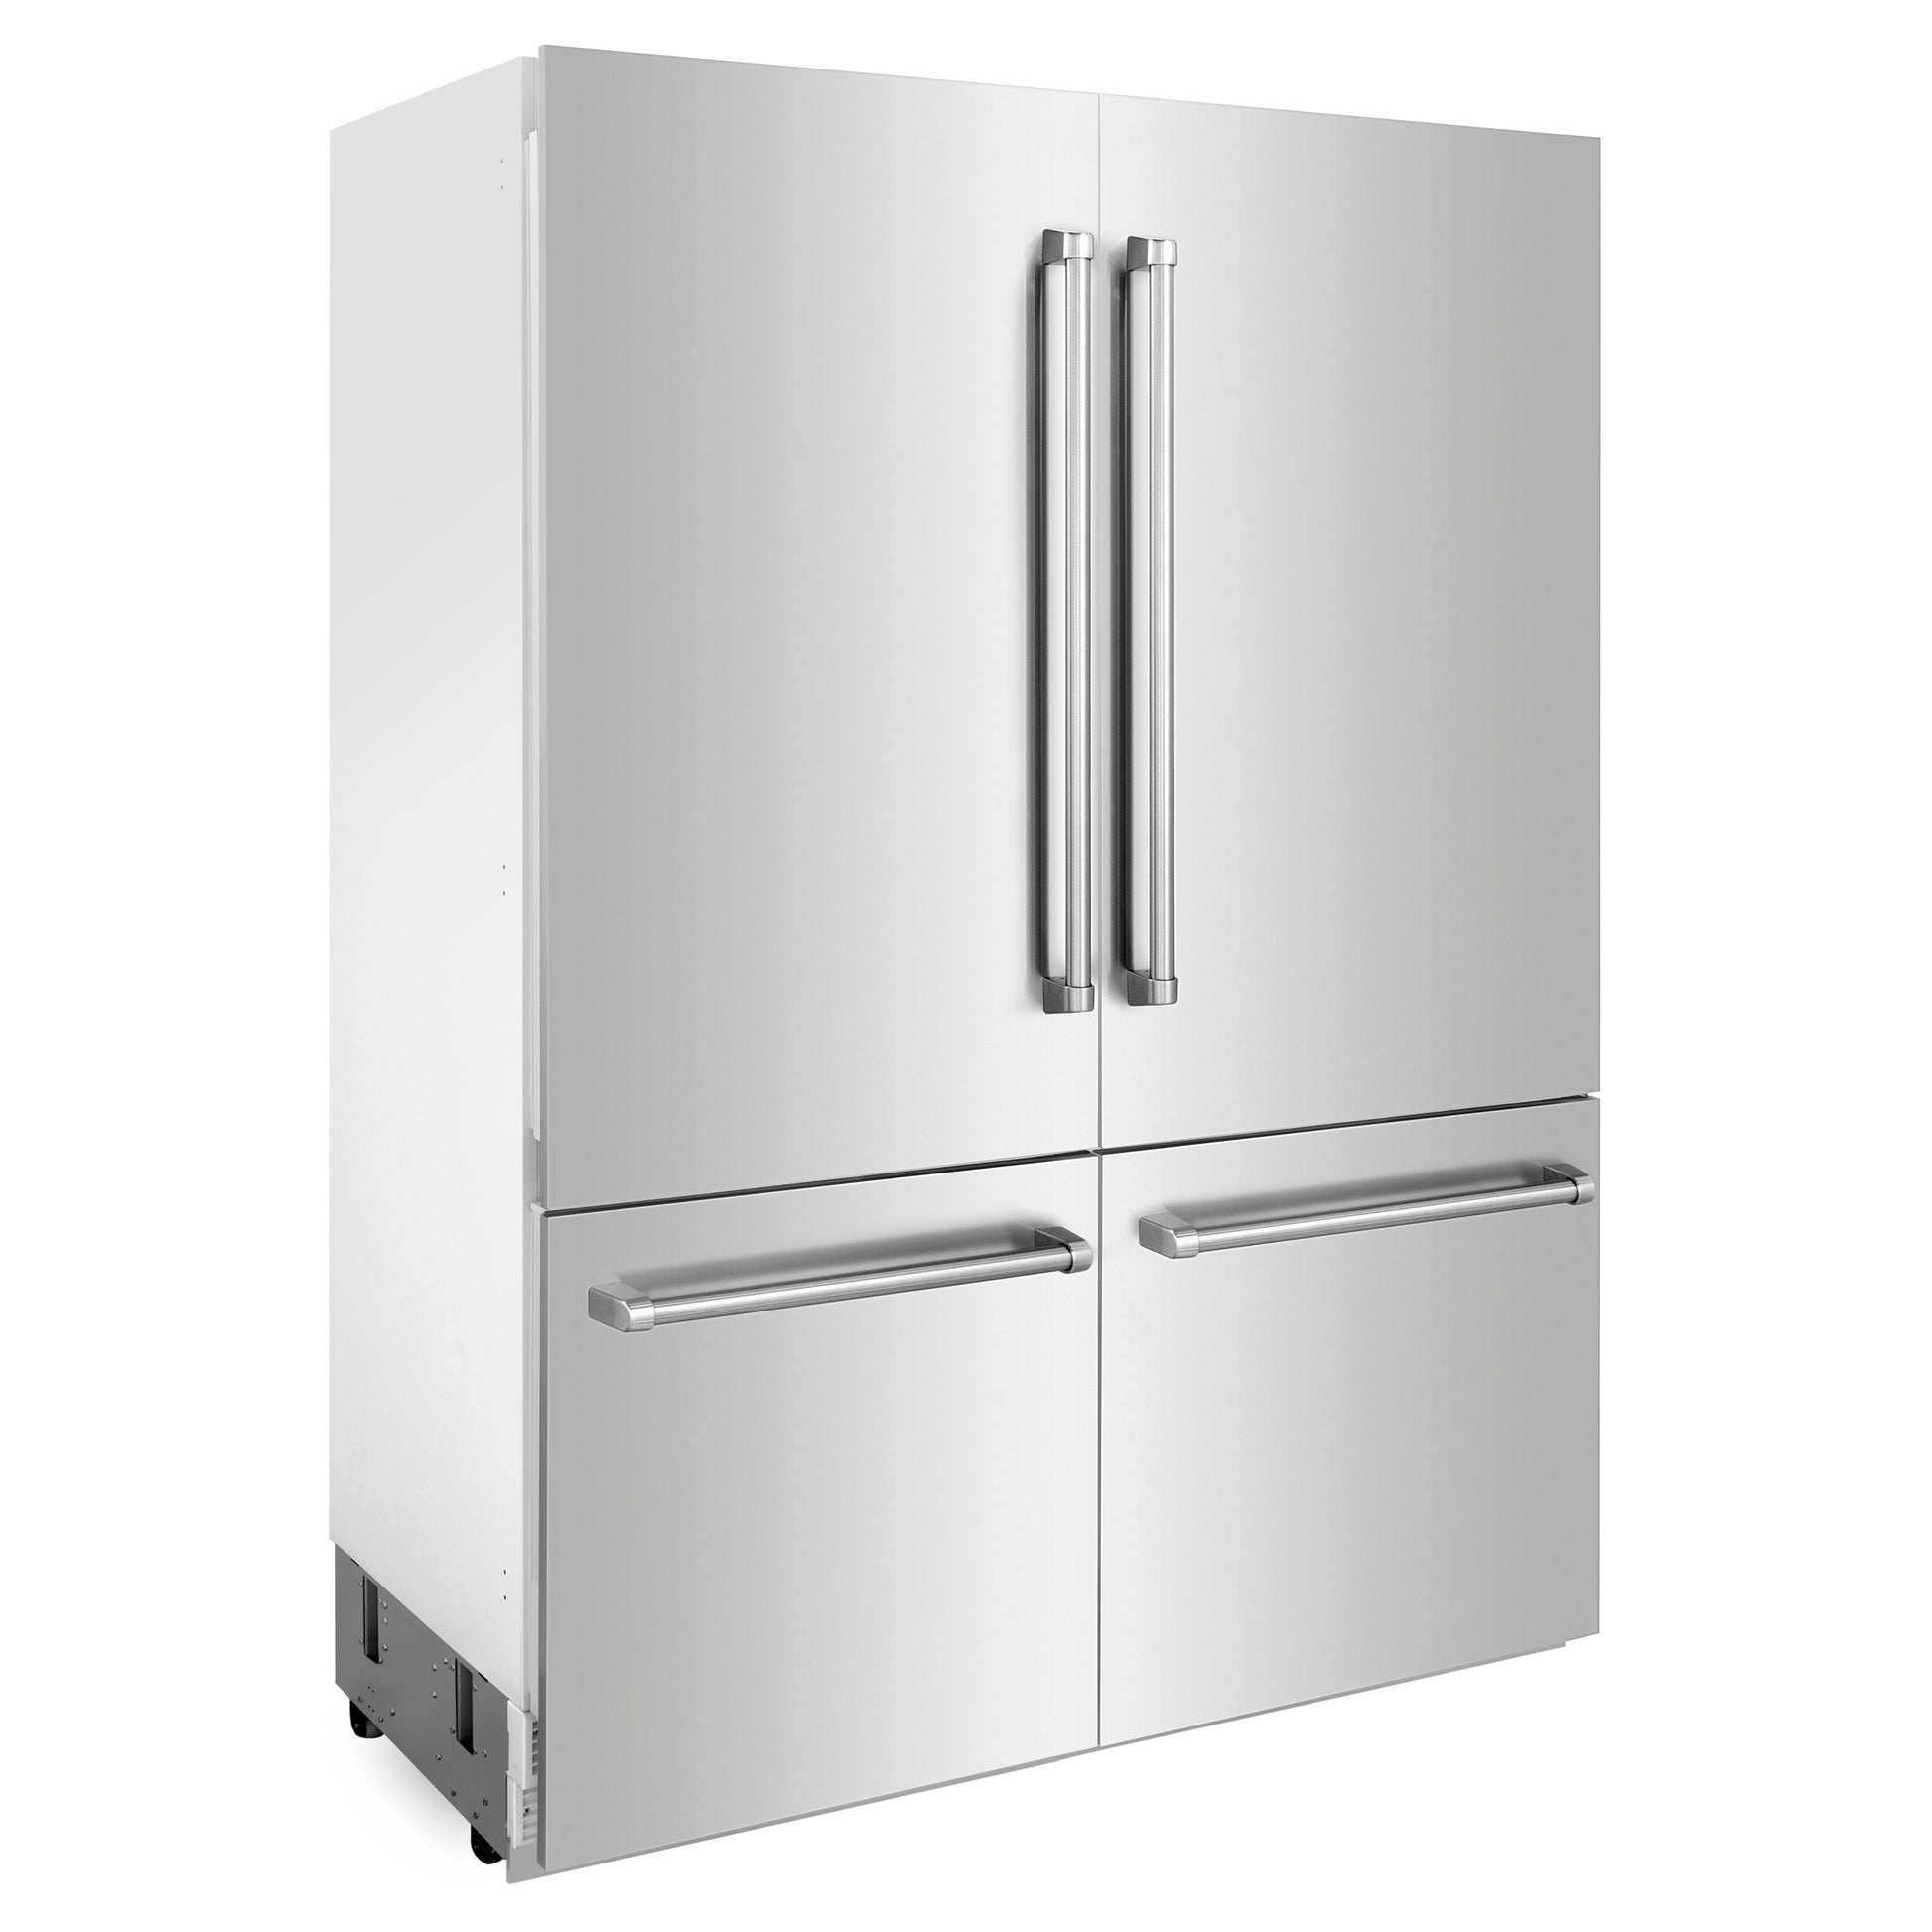 ZLINE 60" Built-In 4-Door French Door Refrigerator with Internal Water and Ice Dispenser - Stainless Steel